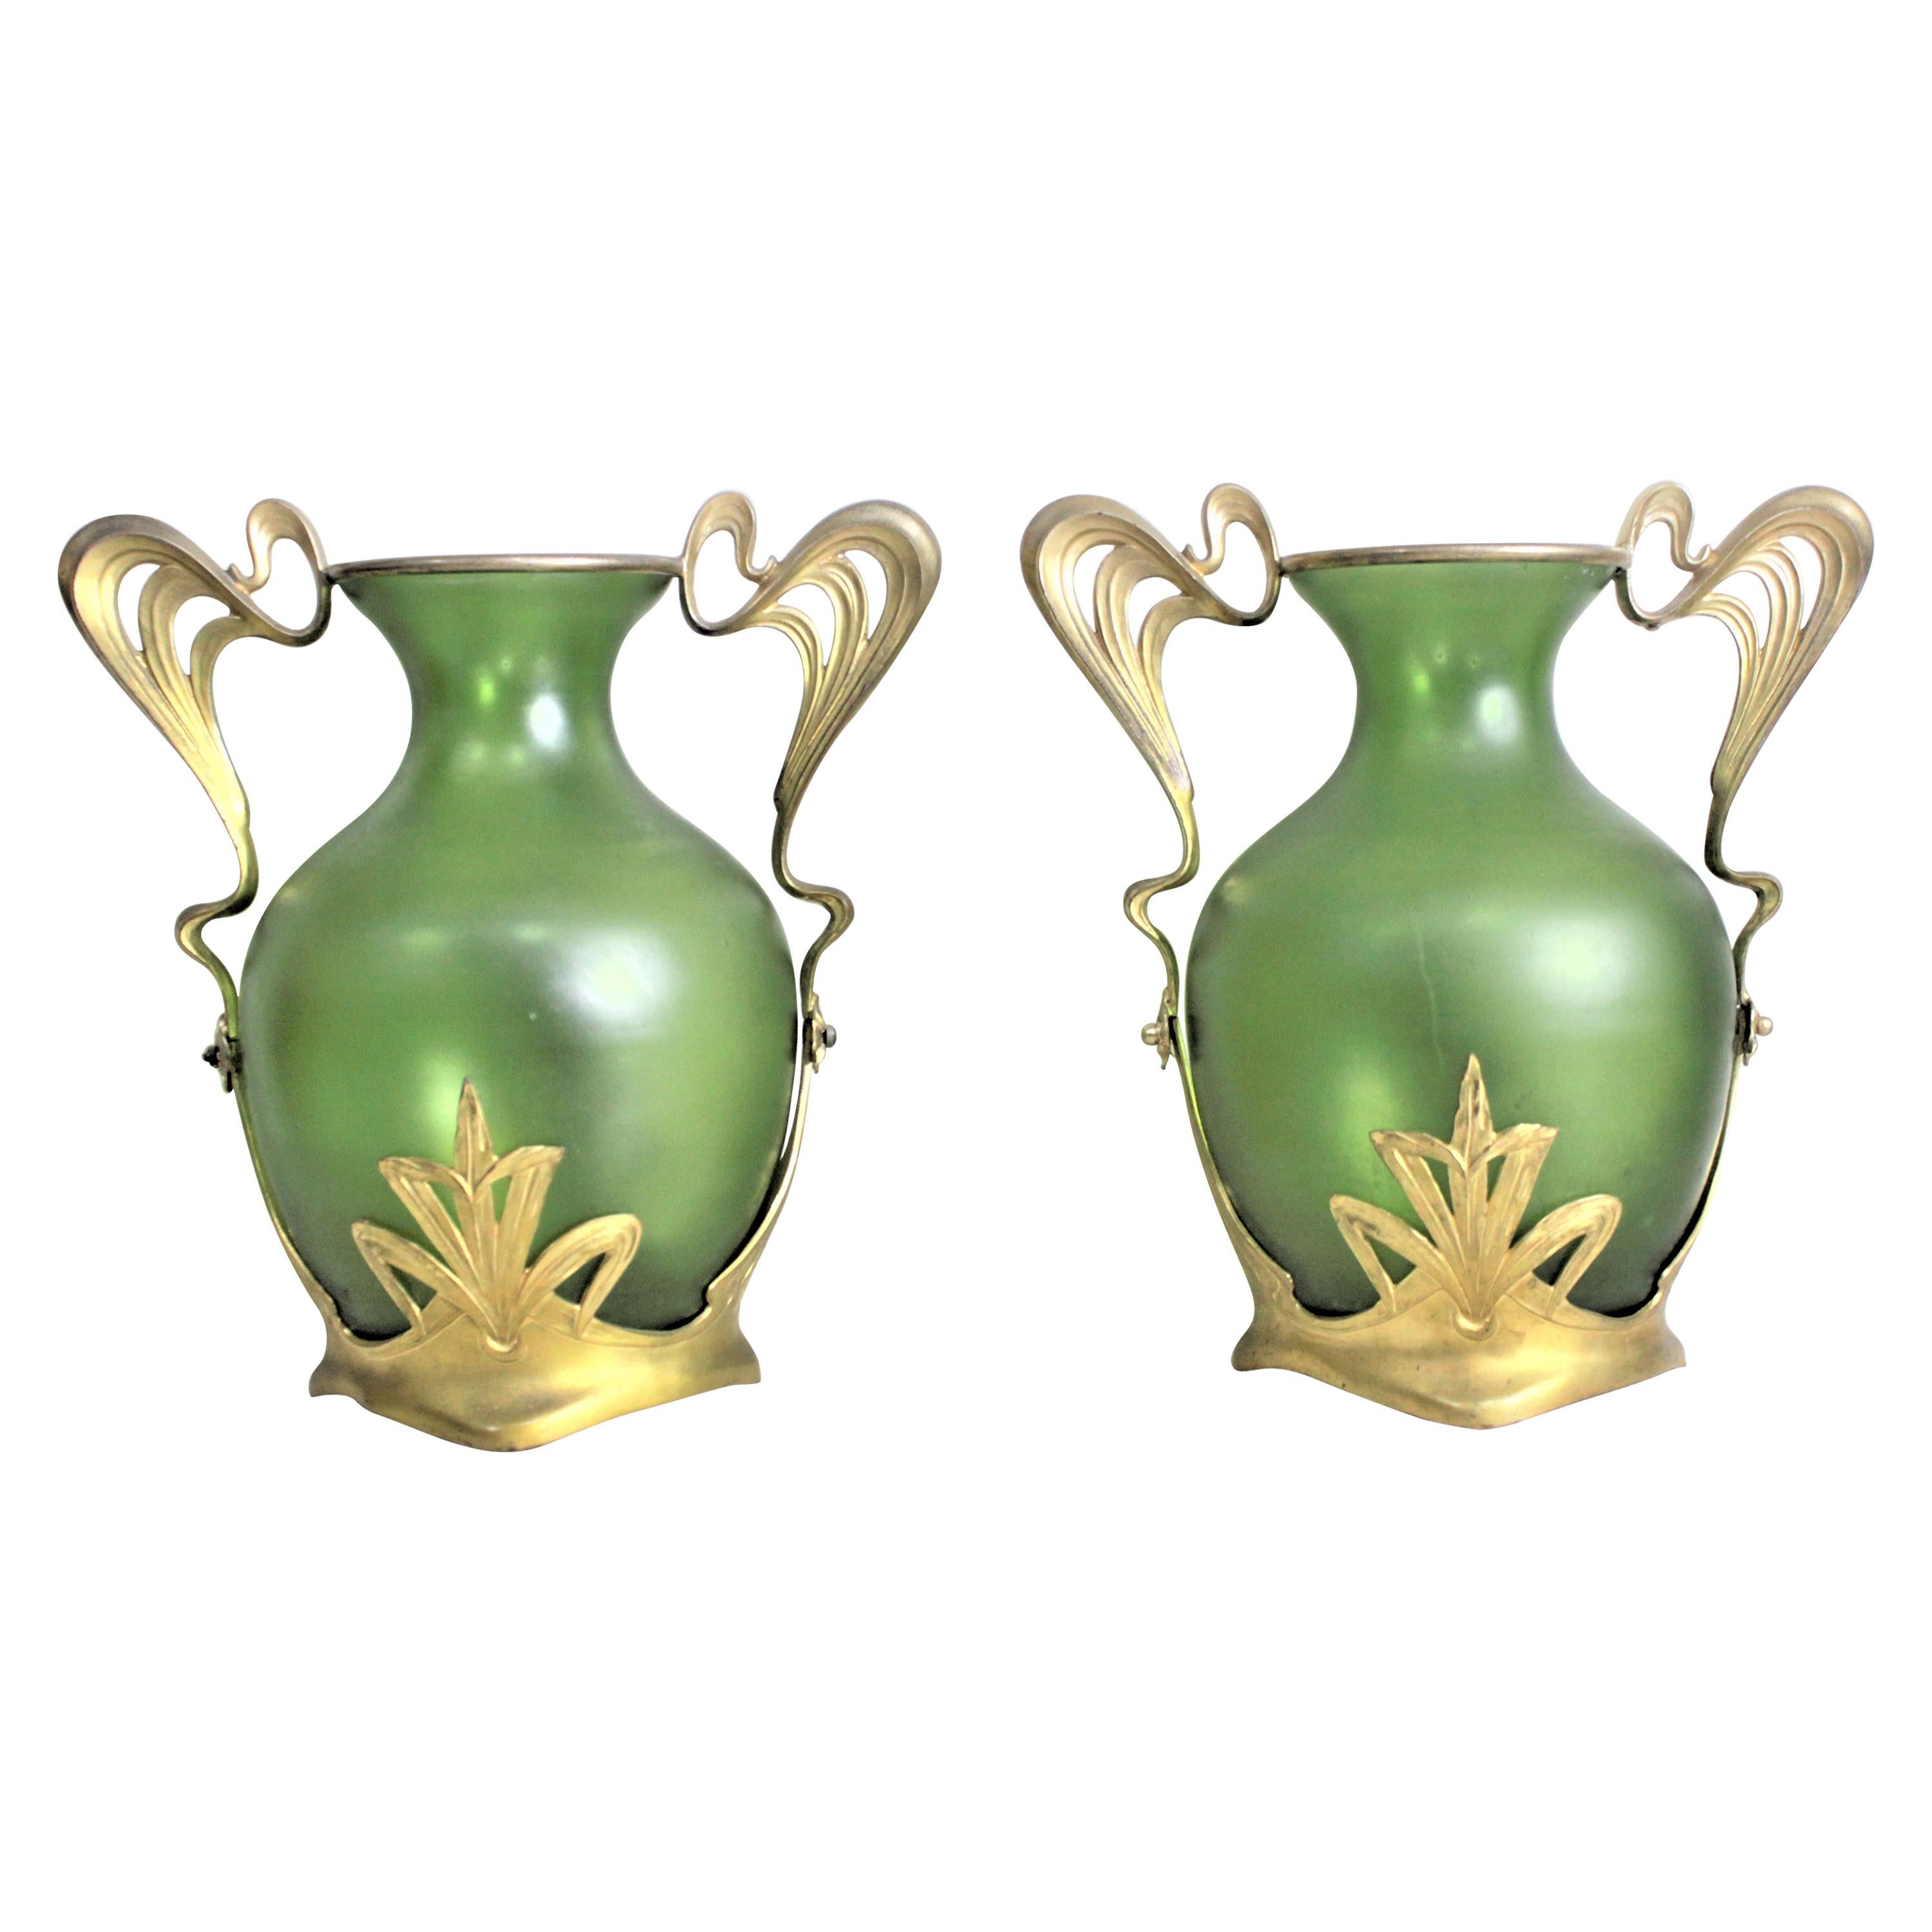 Pair of Antique Art Nouveau Green Austrian Vases with Gilt Metal Mounts